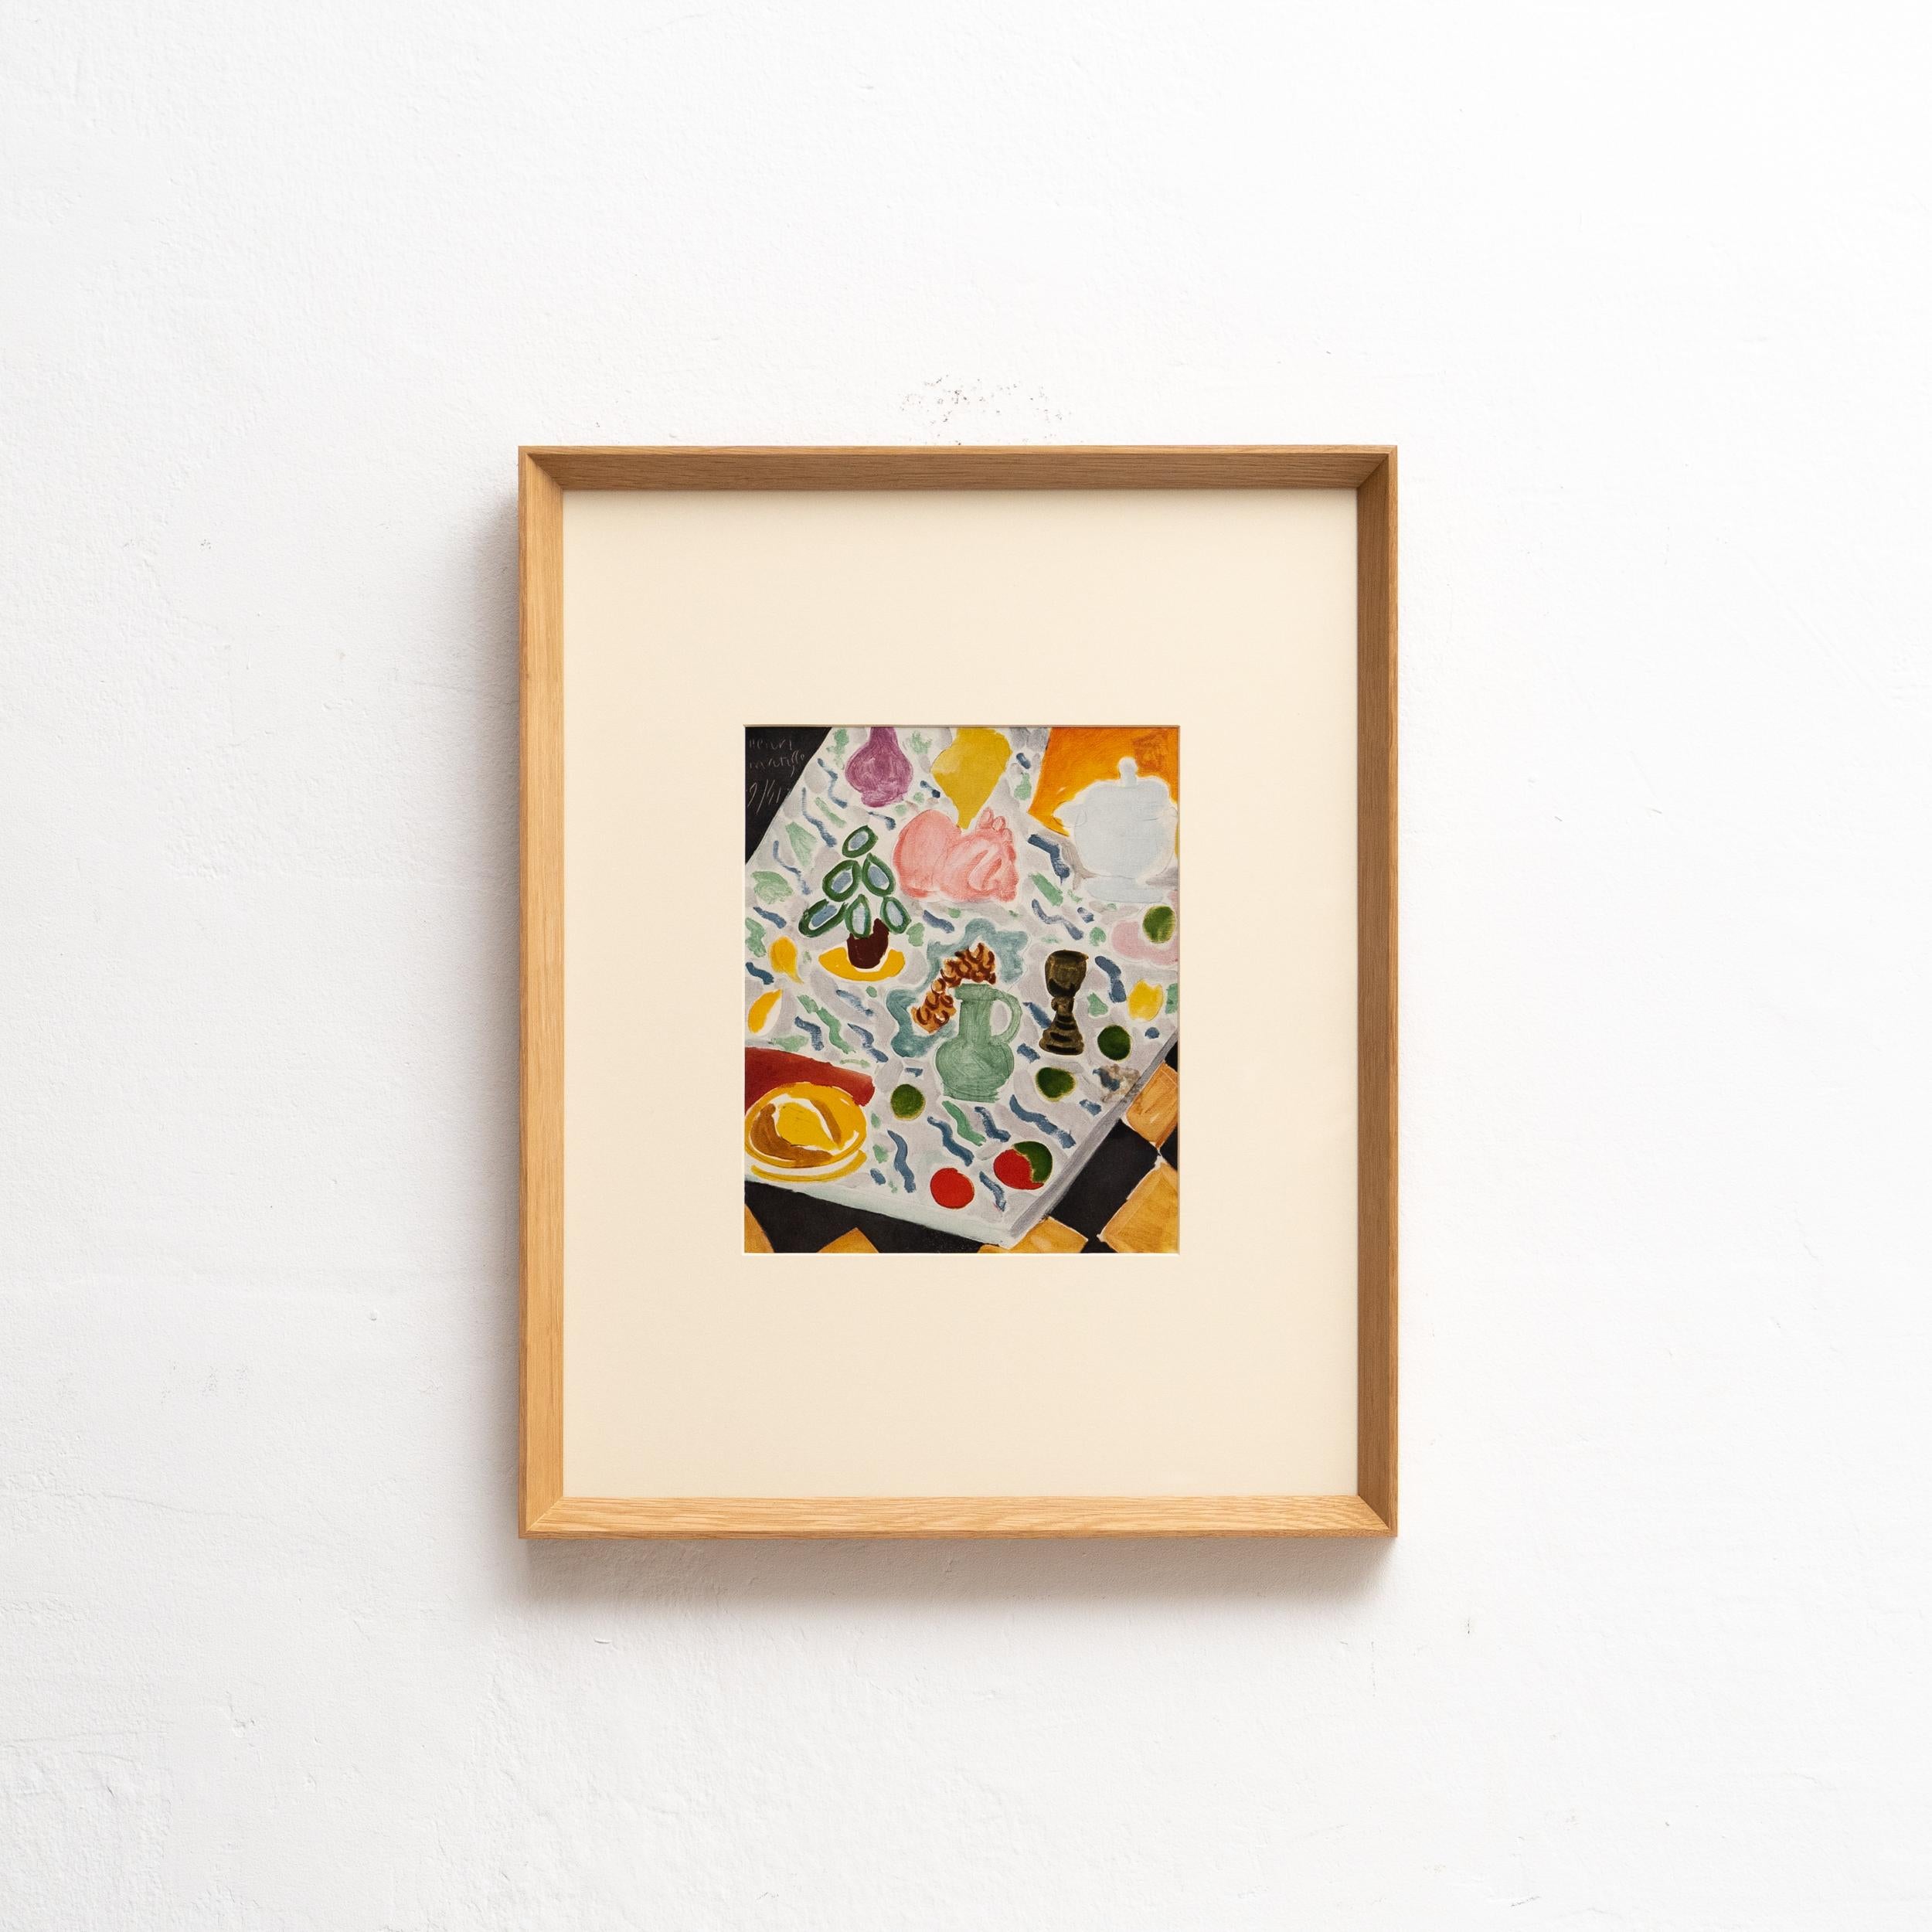 Entrez dans l'univers d'Henri Matisse avec cette rare lithographie en couleurs, qui témoigne de l'utilisation inégalée de la couleur et de la fluidité du dessin par l'artiste. Publiée en 1943 par les Editions du Chêne, Paris (France), cette pièce